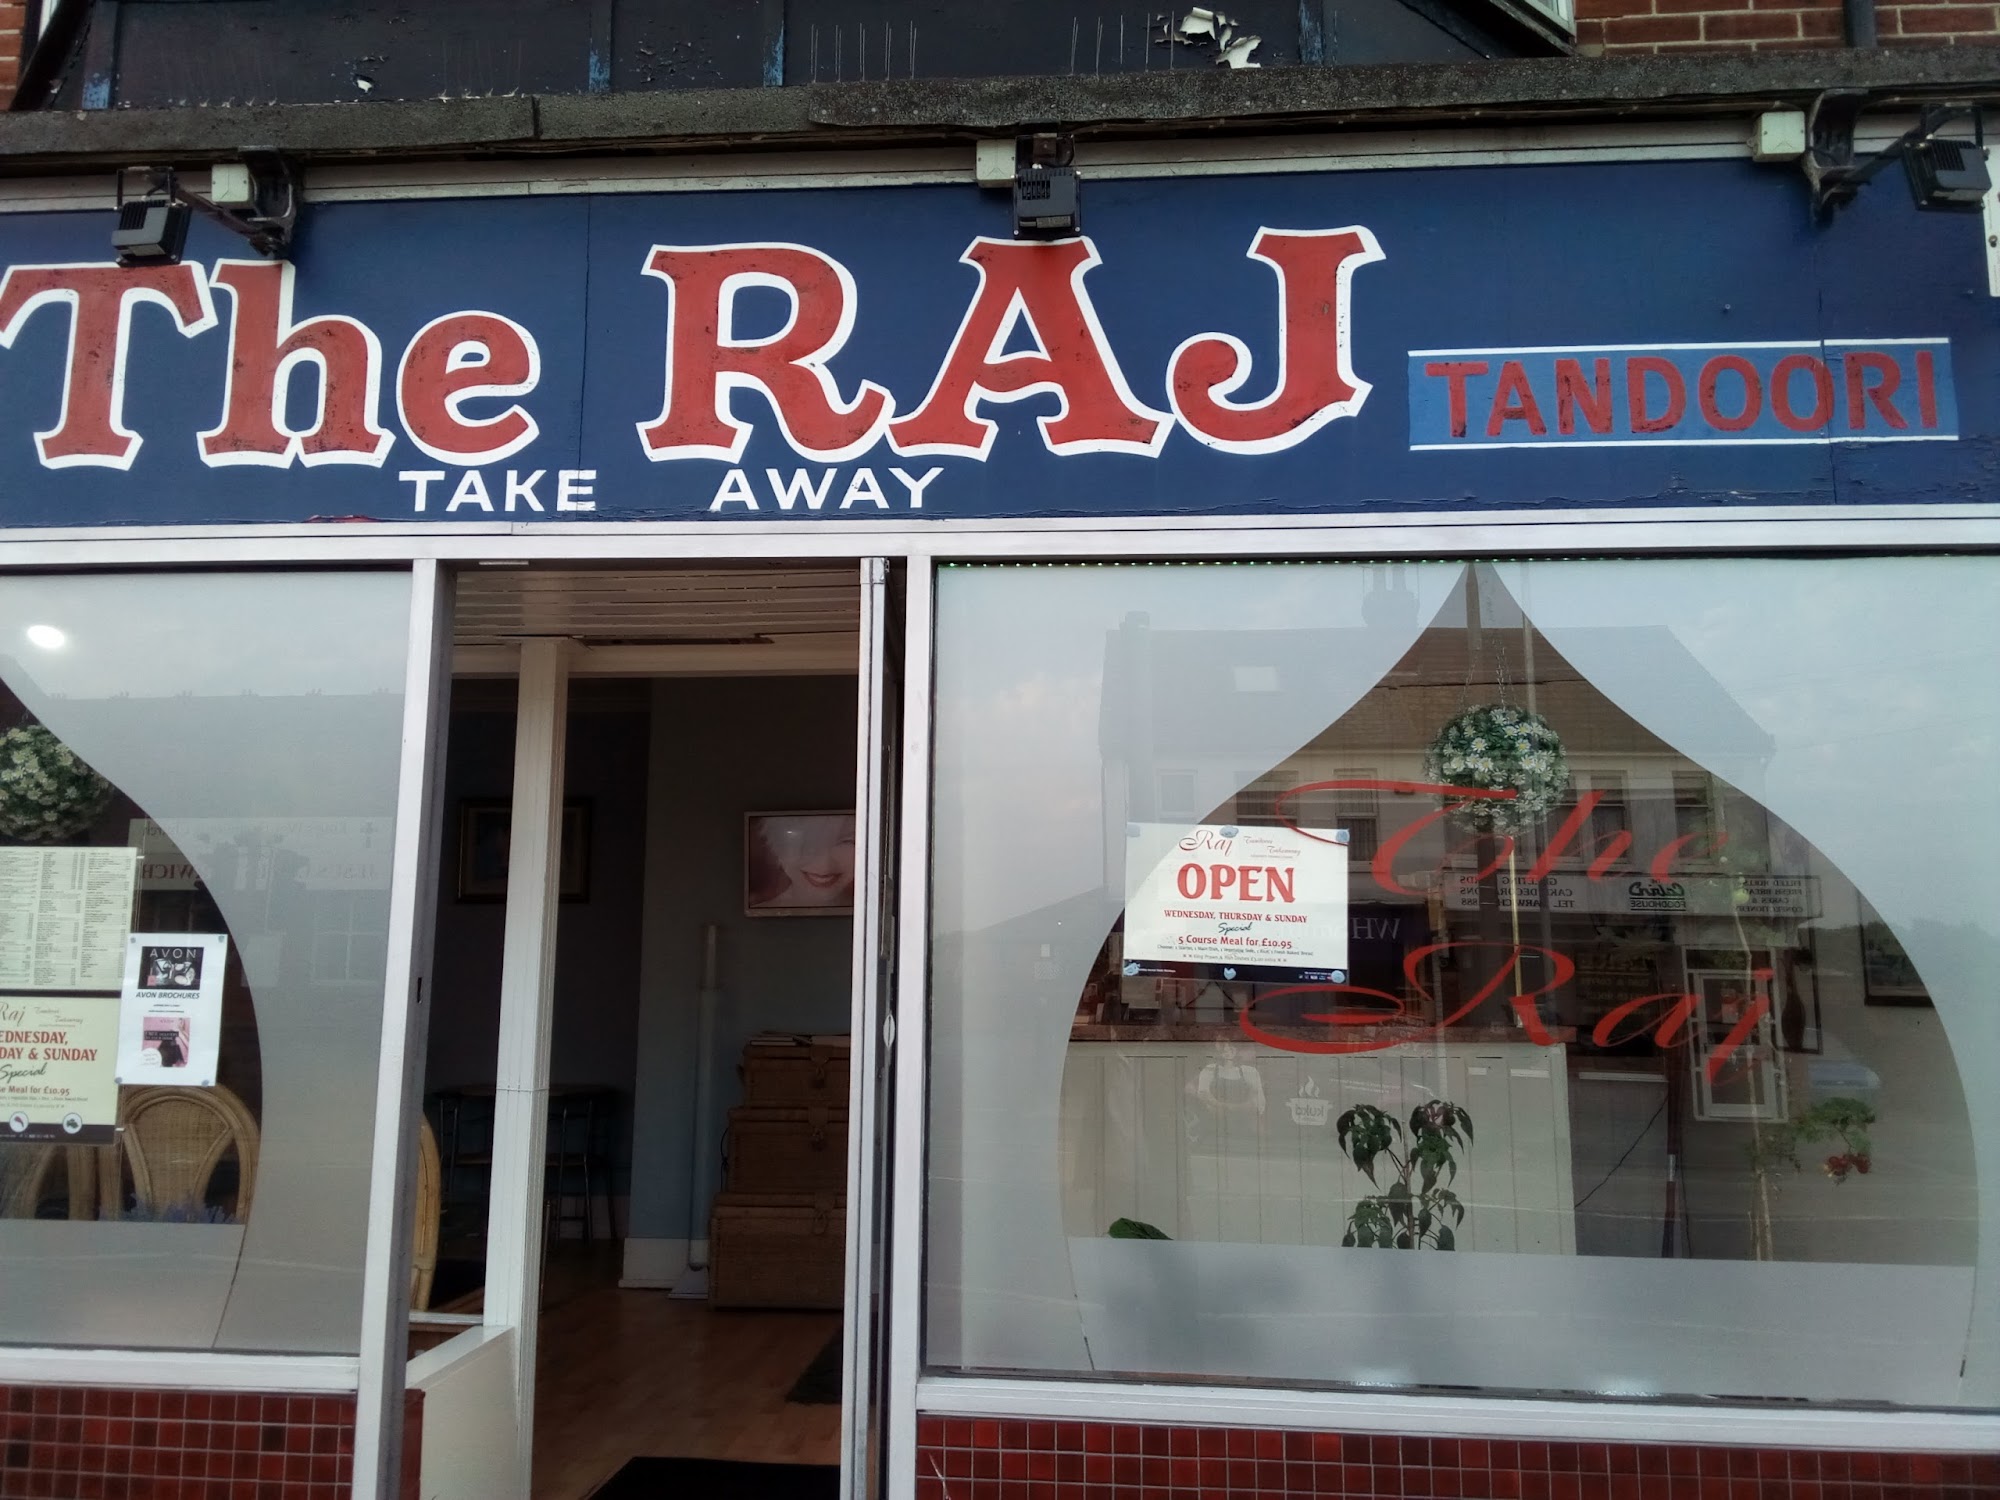 The Raj